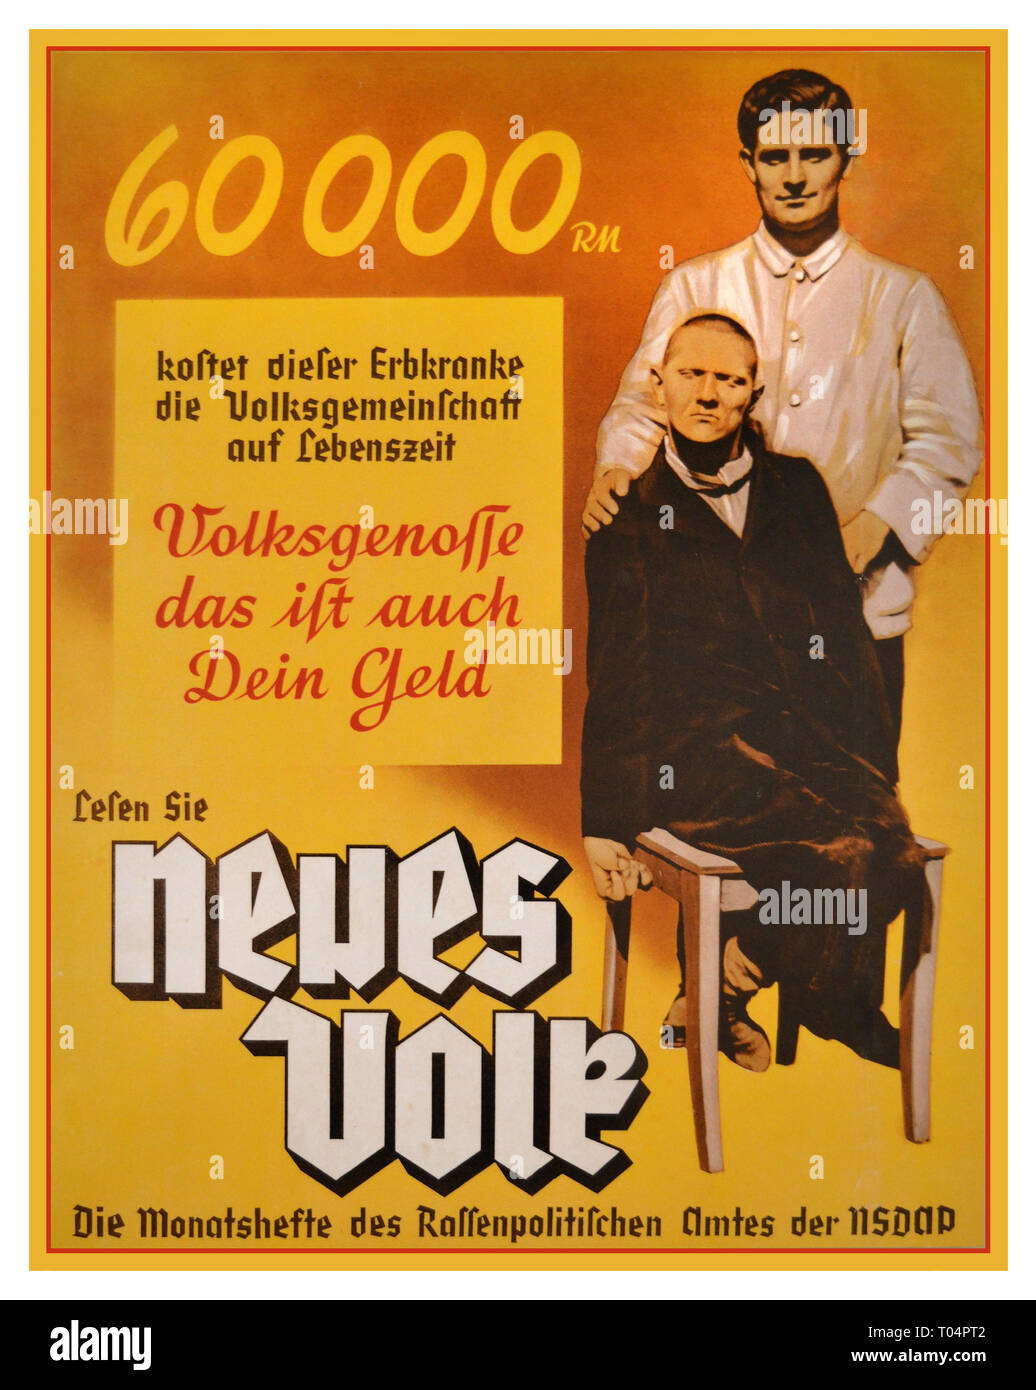 1938 Poster di Propaganda nazista per la rivista mensile 'Neues Volk' (il nuovo popolo) pubblicato da 'Ufficio di politica razziale' del partito nazista Goebbels, 'l'Ufficio di politica razziale' propagò la 'dottrina razziale' nazista in una varietà di modi. Nei poster e nelle pubblicazioni, si contrappone l'ideale del tedesco sano, capace e 'razzicamente puro' con l'immagine grossolanamente distorta e razzista dei malati e dei disabili improduttivi che hanno gravato la 'Comunità produttiva del Volk' come 'esistenze di zavorra'. Il testo del poster recita: "Questo difetto ereditario costa alla Comunità Volk 60.000 RM (Reichsmark) nel corso della sua vita Foto Stock